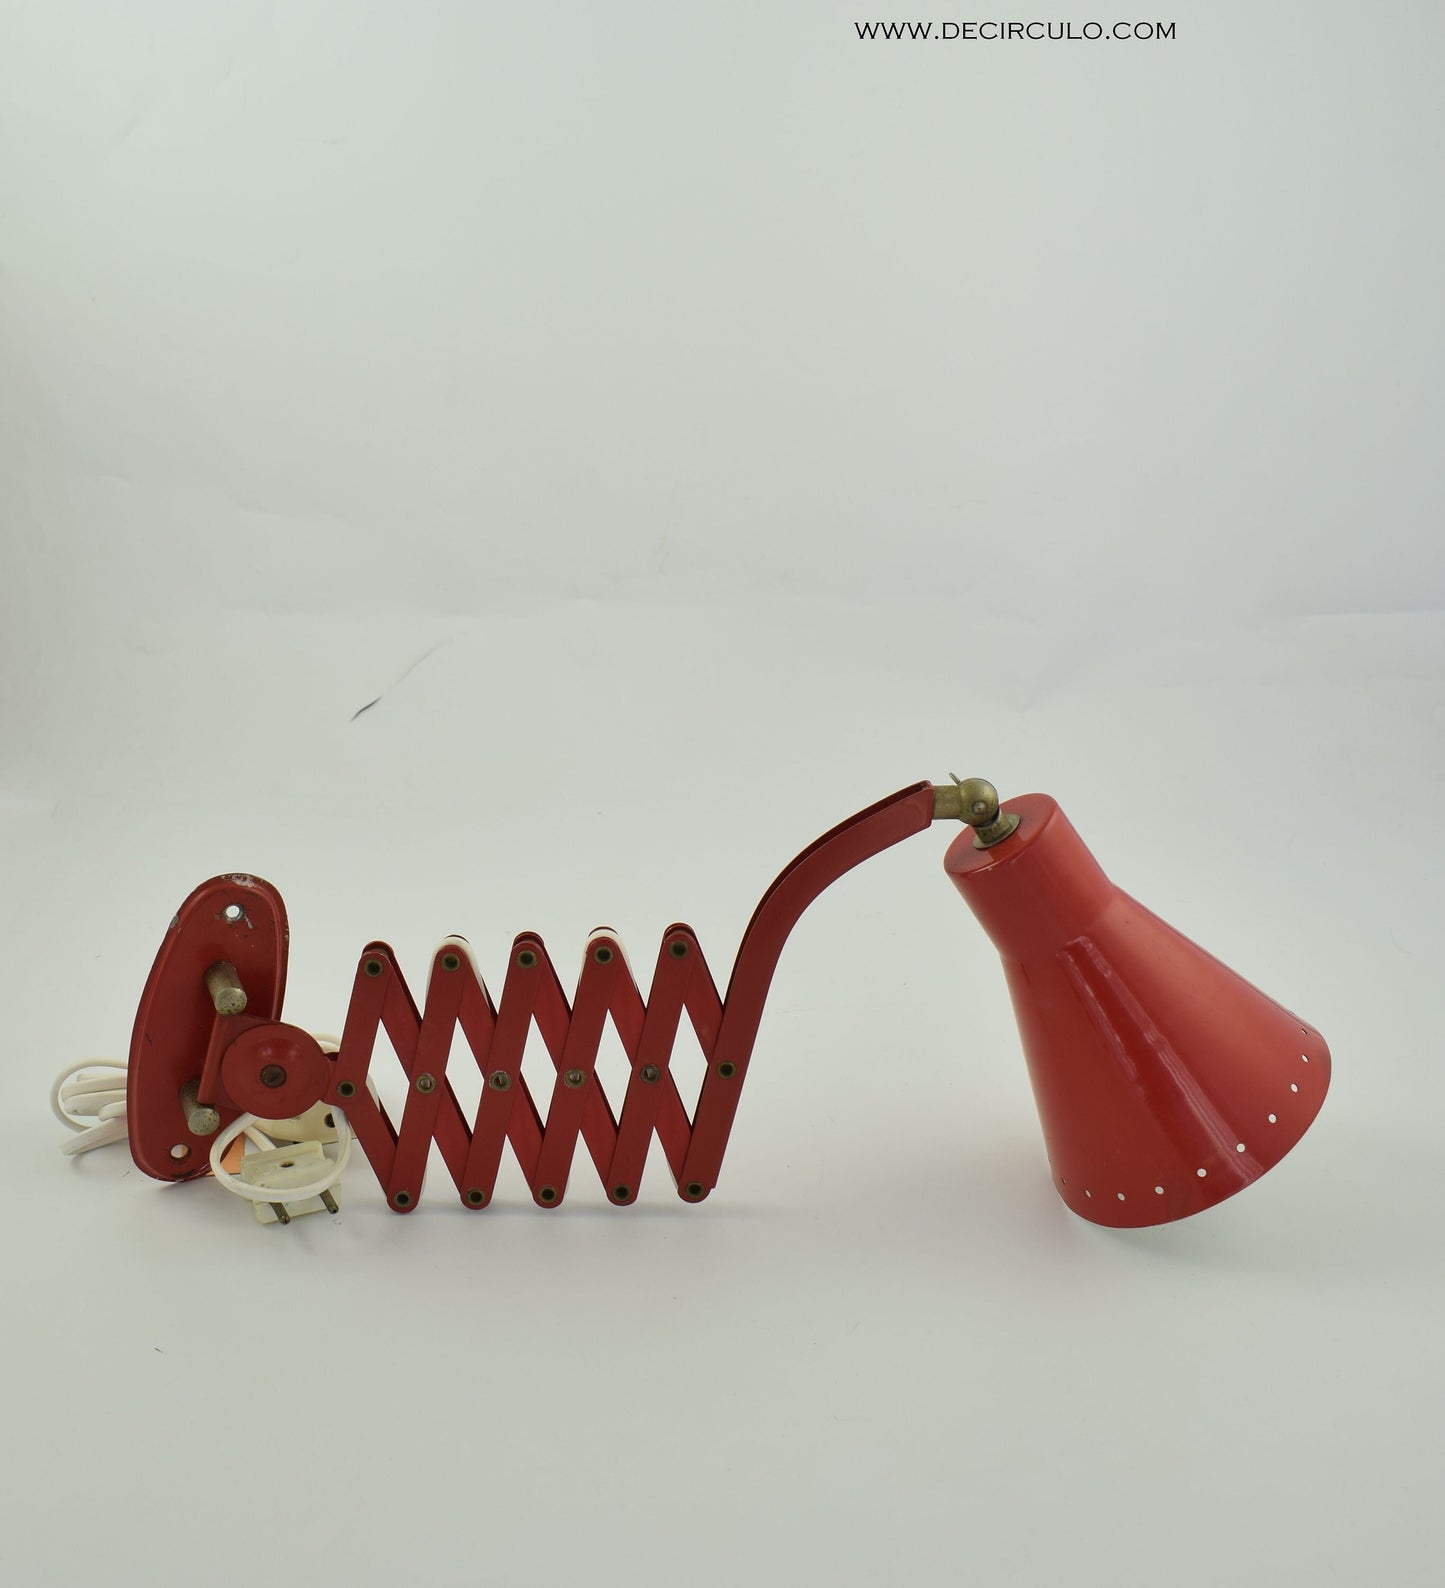 Aplique de tijera. Lámpara de pared vintage con forma de tijera roja de los años 60 atribuida a la firma holandesa Hala